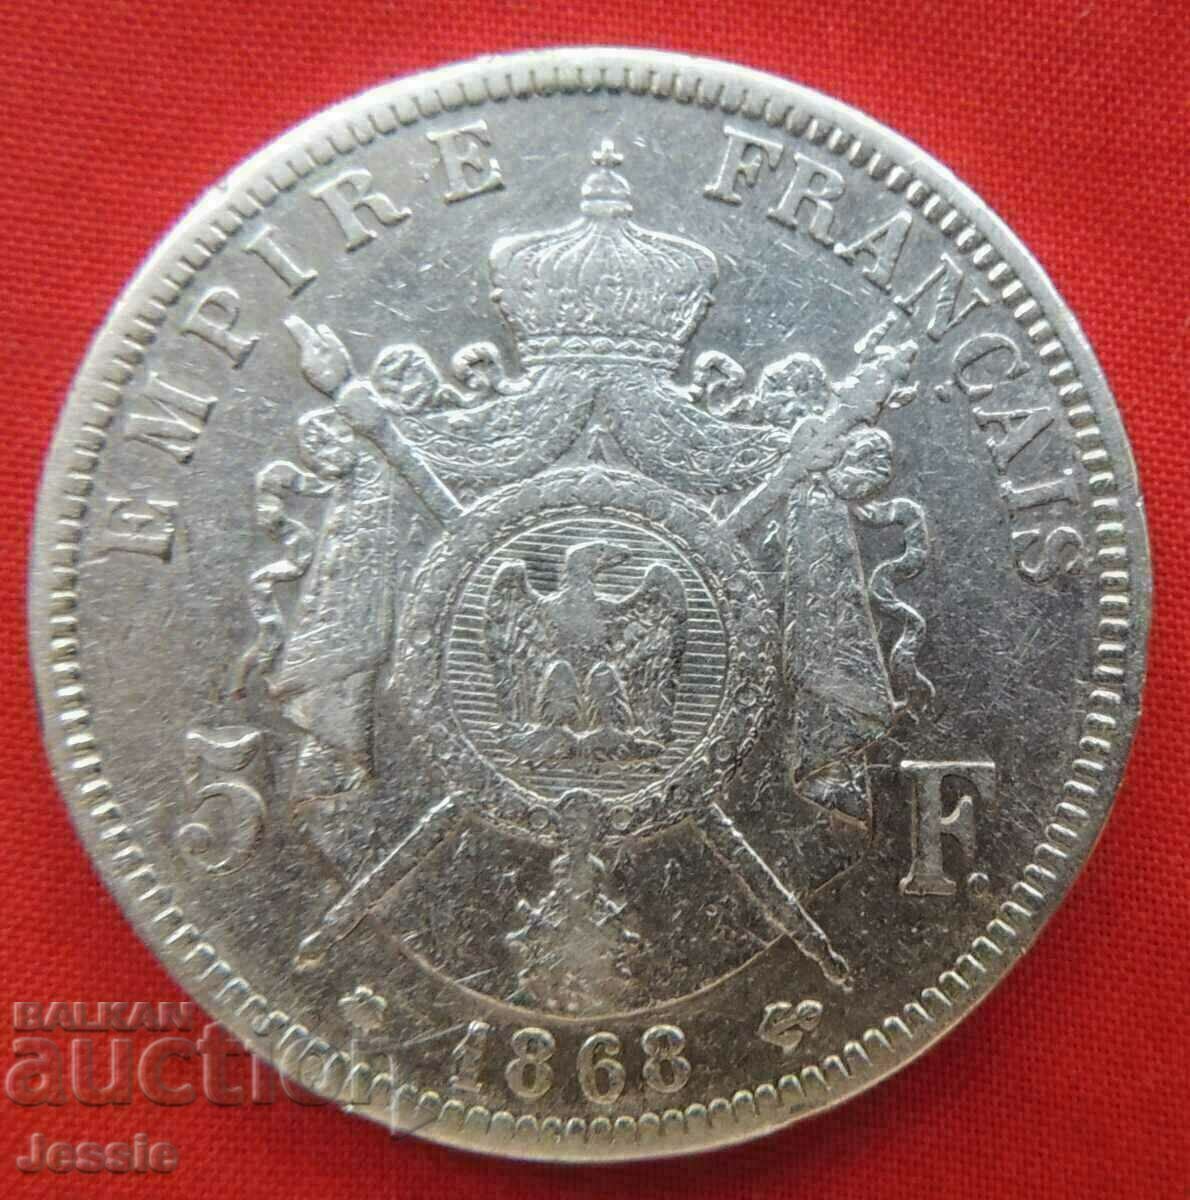 5 Francs 1868 A silver France